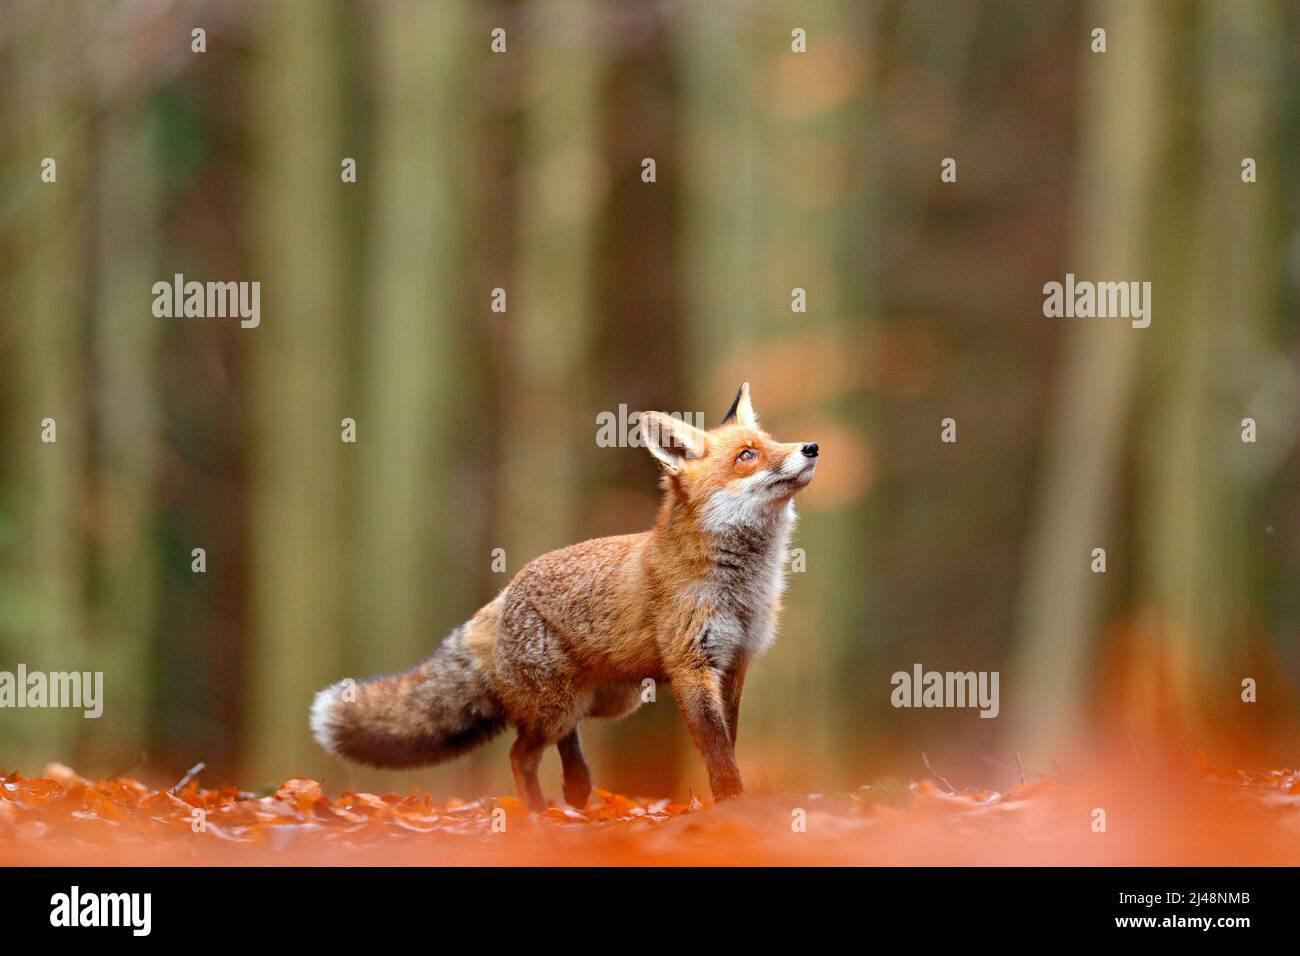 Cute Red Fox, Vulpes vulpes, foresta autunnale. Bellissimo animale nell'habitat naturale. Volpe arancione, ritratto dettagliato, ceco. Scena della fauna selvatica dal nat selvatico Foto Stock